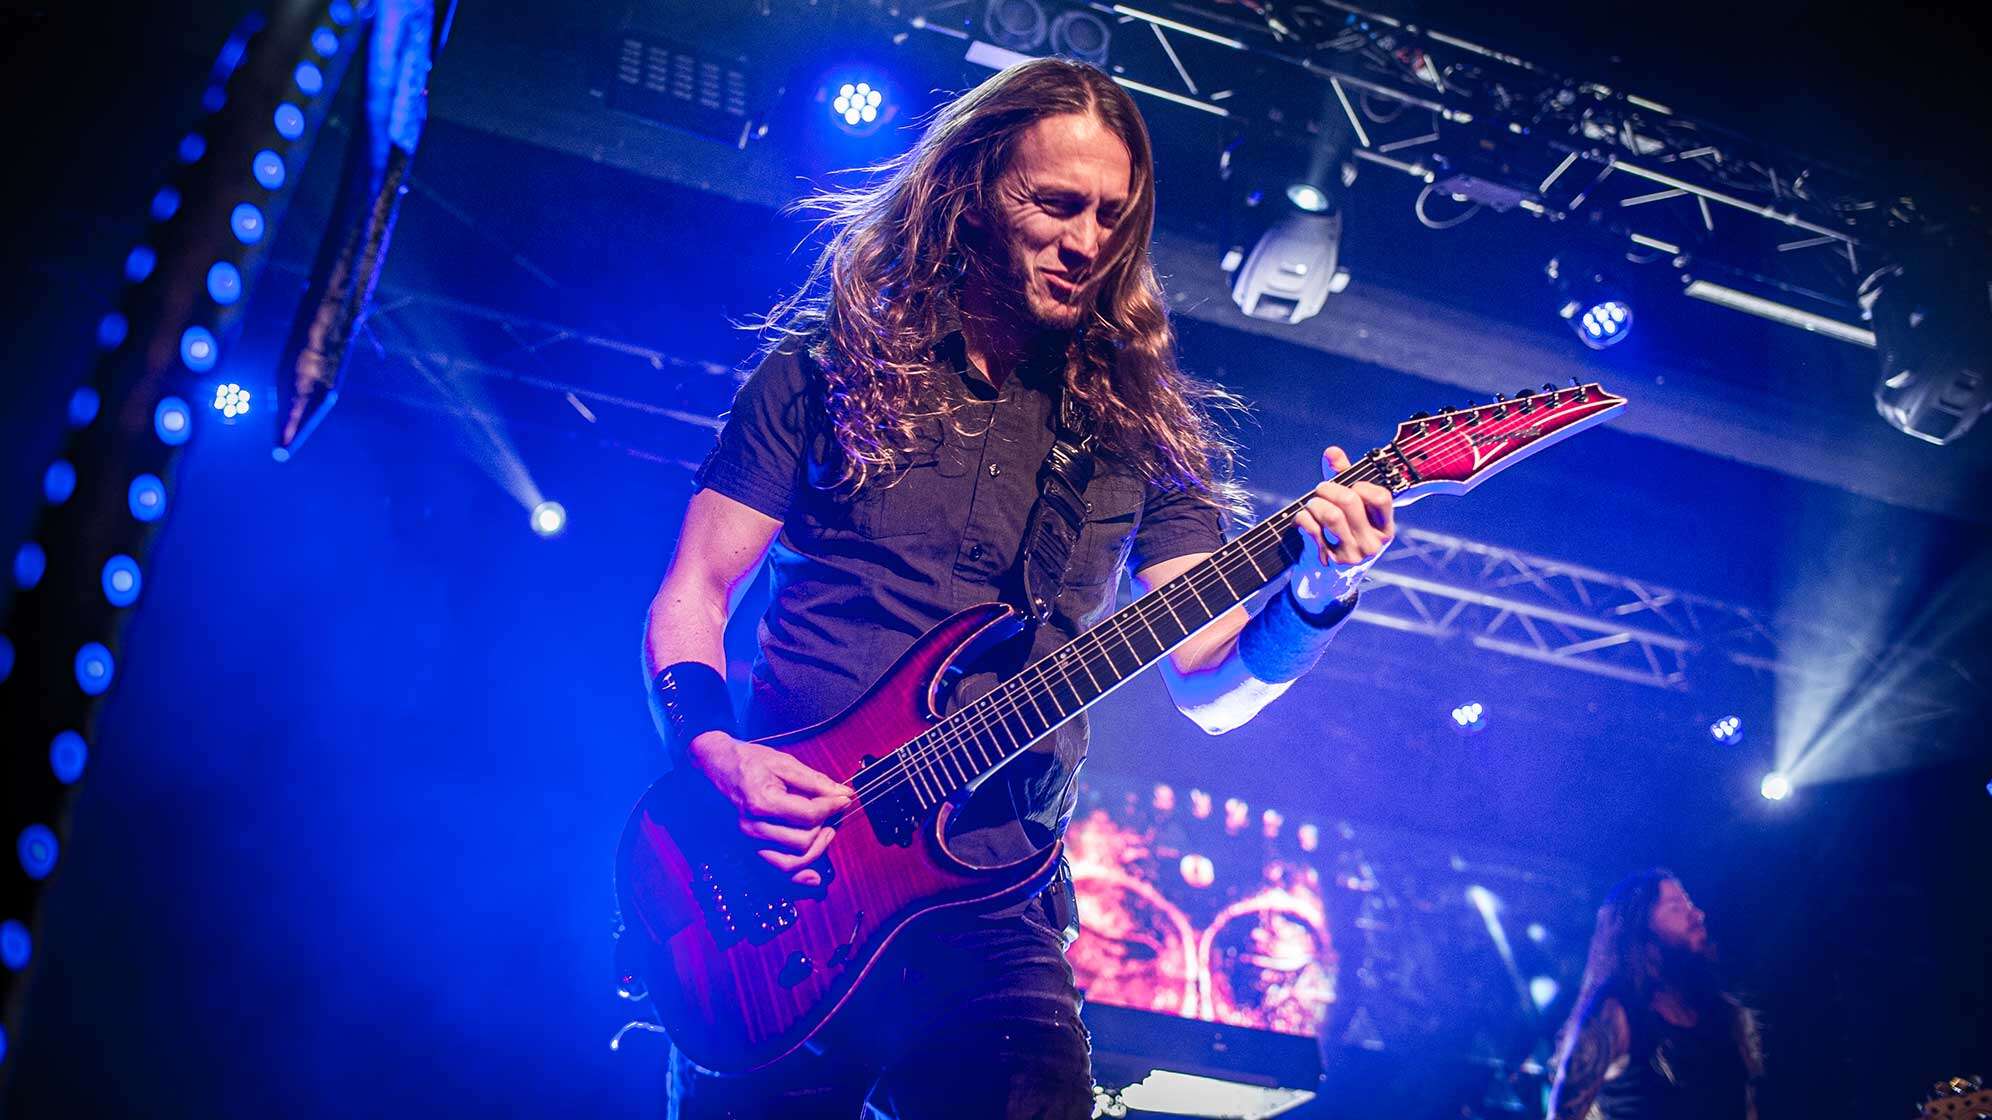 Gitarrist Mark Jansen von Epica steht auf der Bühne - im Hintergrund sieht man eine blaue Beleuchtung.